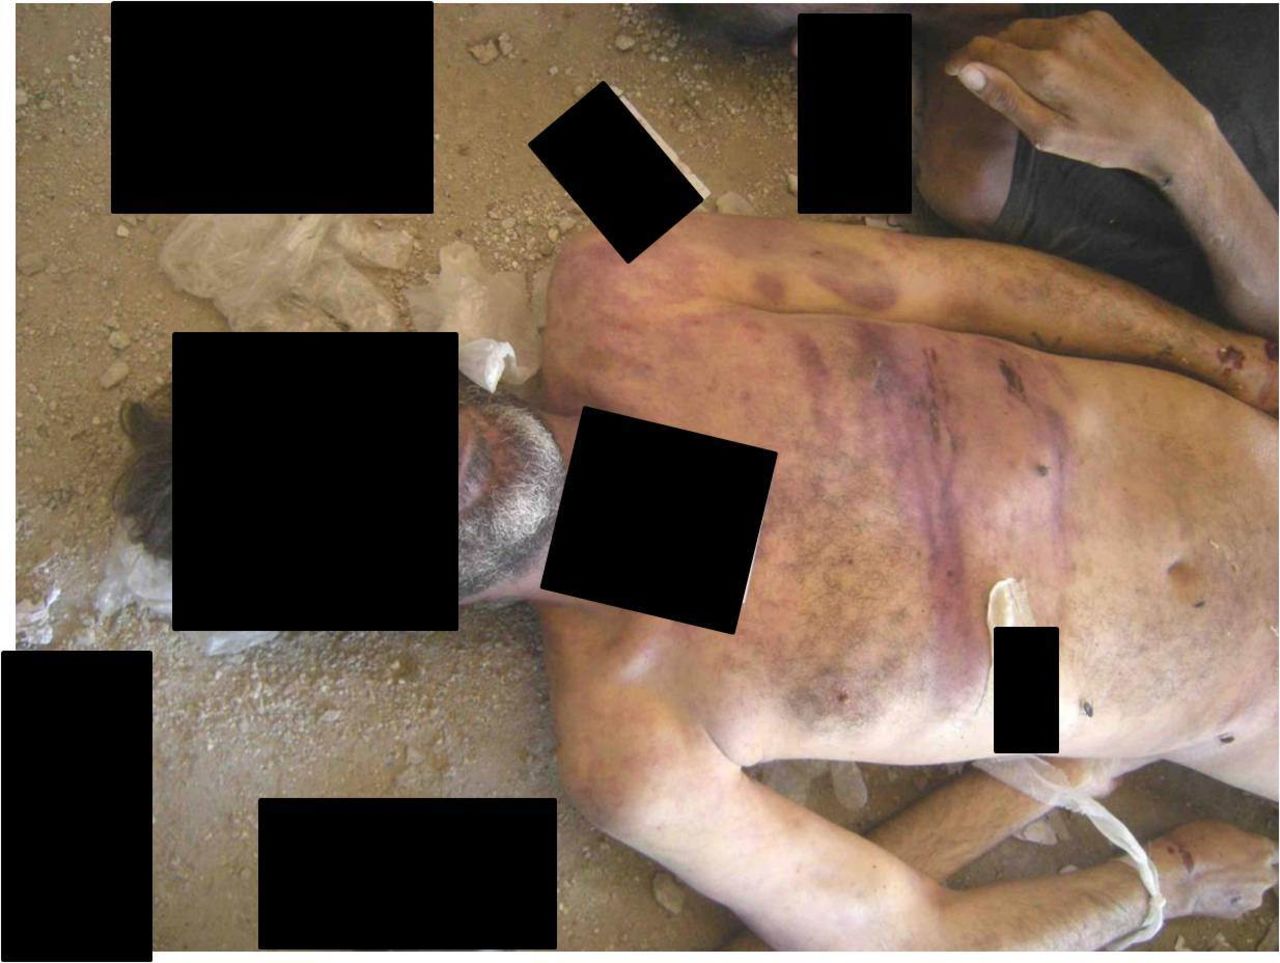 Heridas en cuerpos producidas supuestamente por golpes con "objetos como barras".